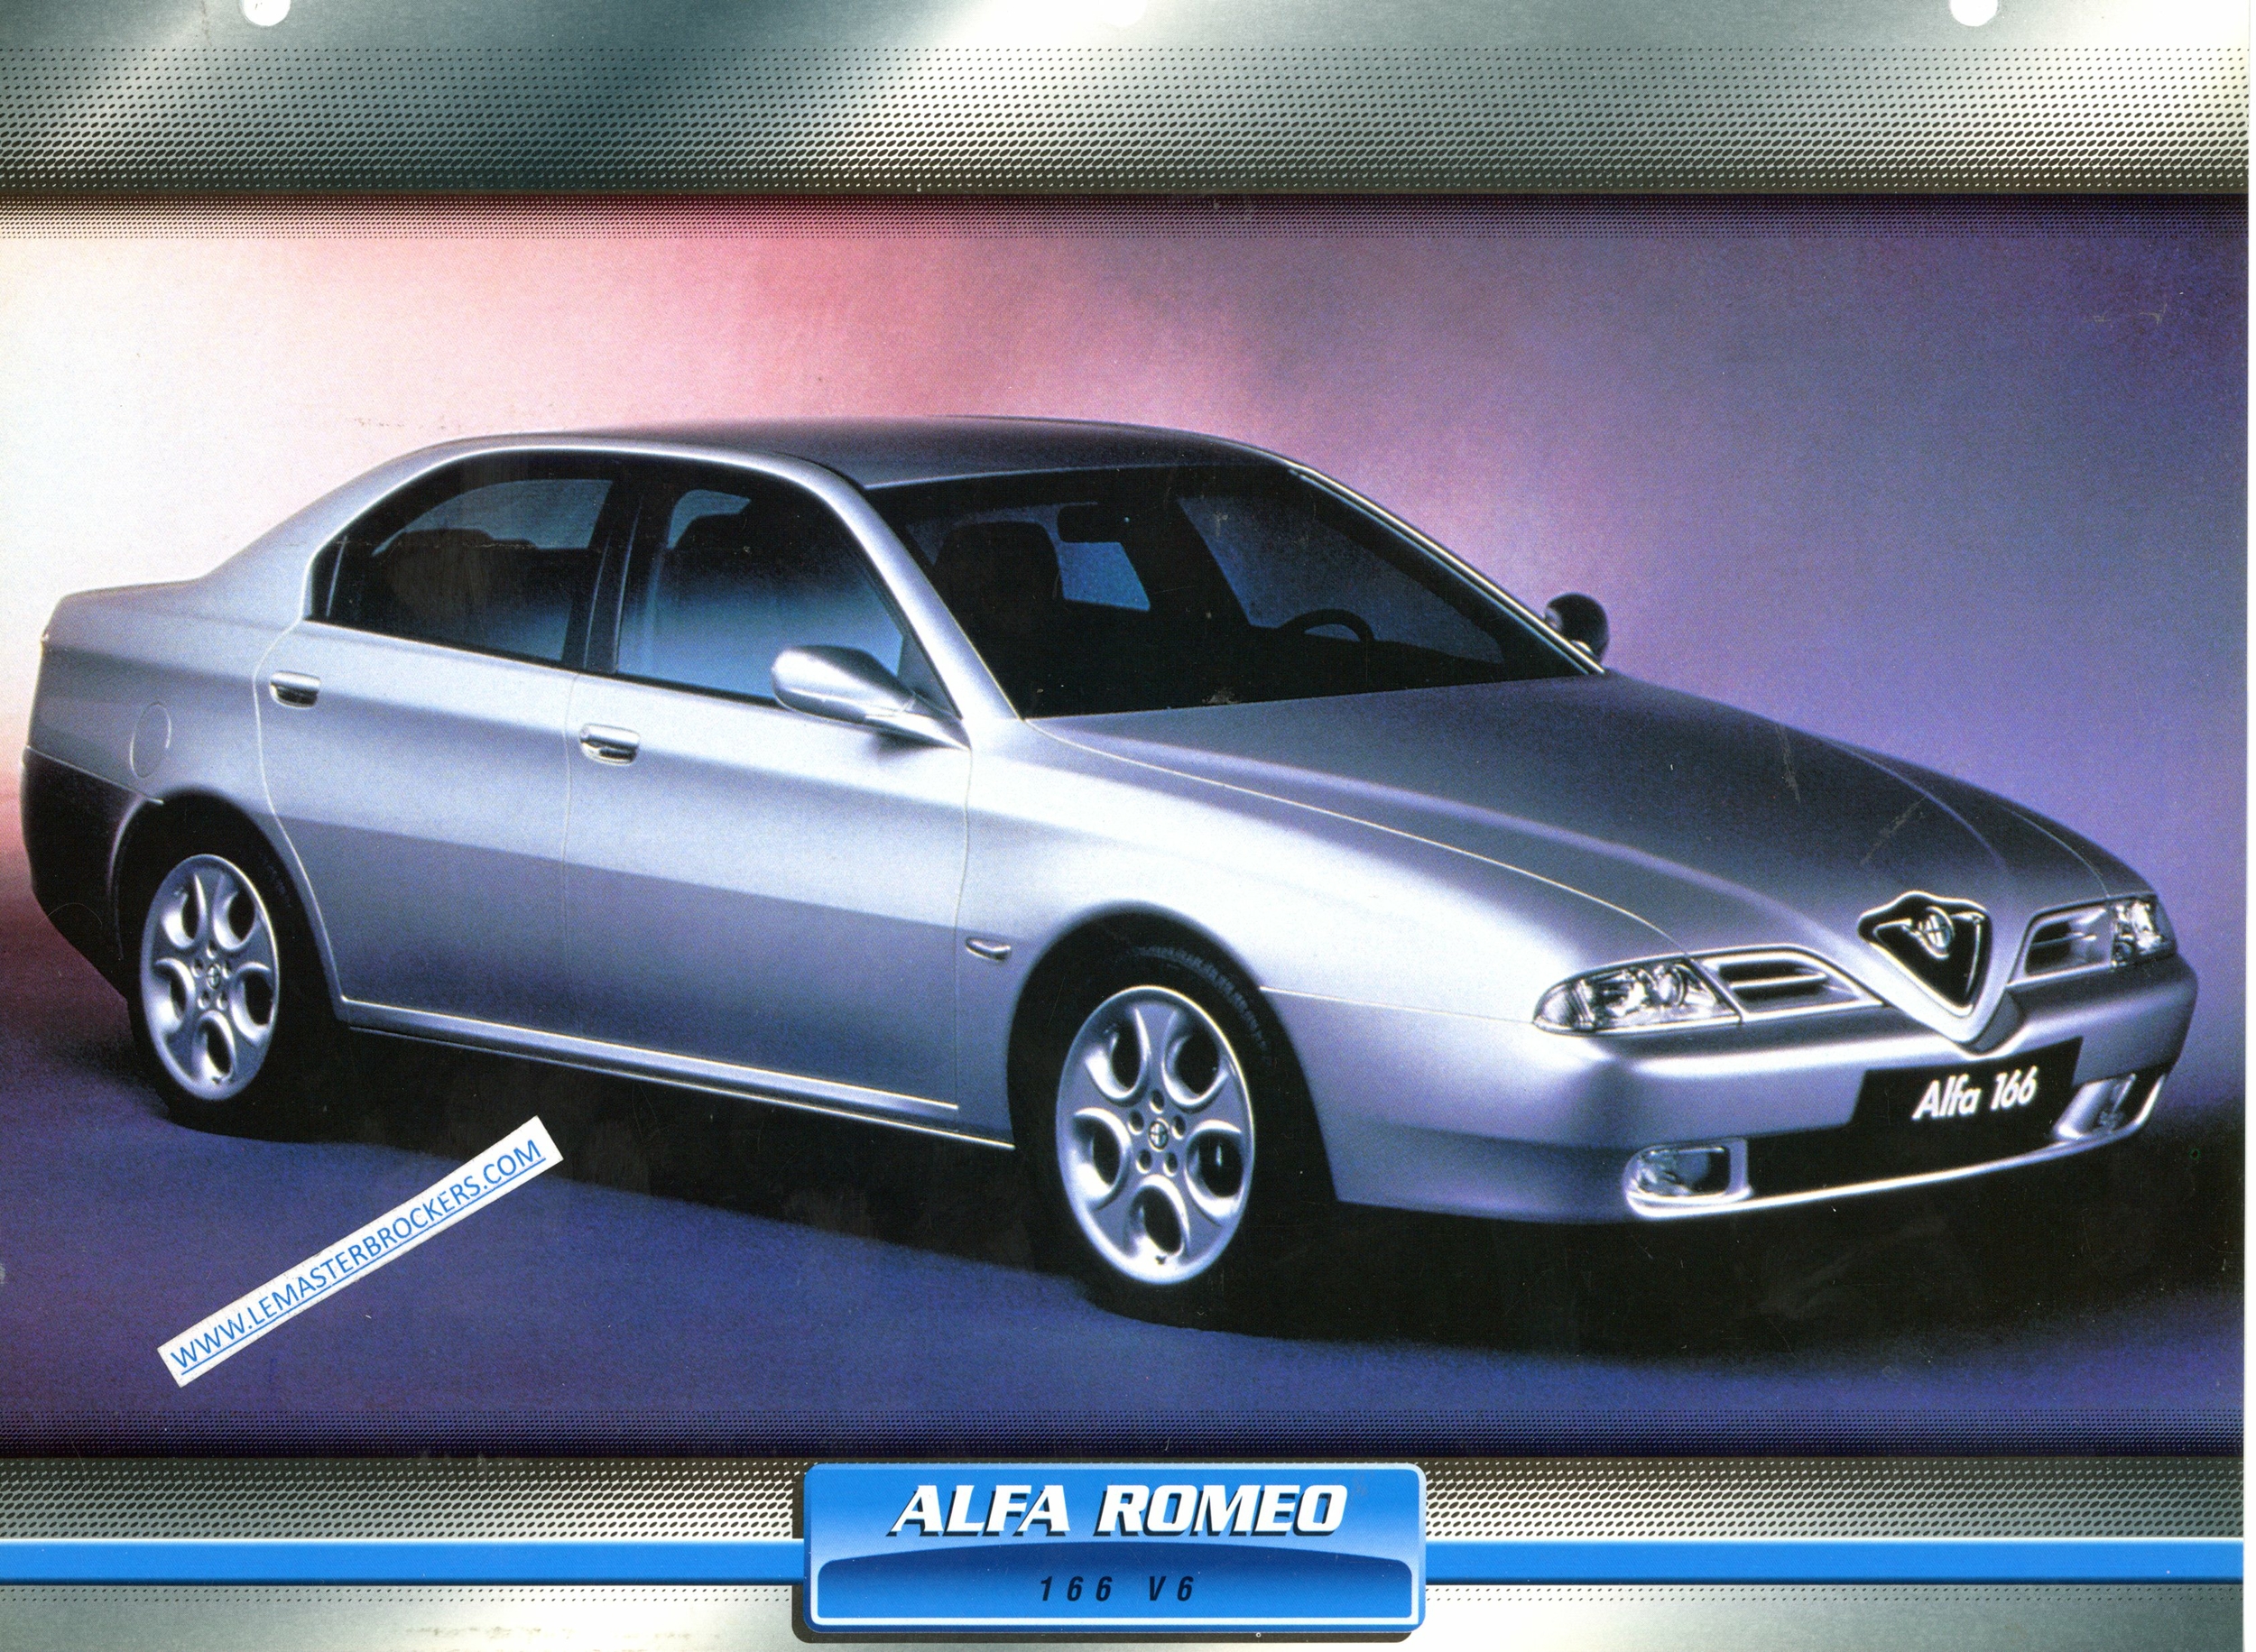 FICHE ALFA ROMEO 166 V6 1998